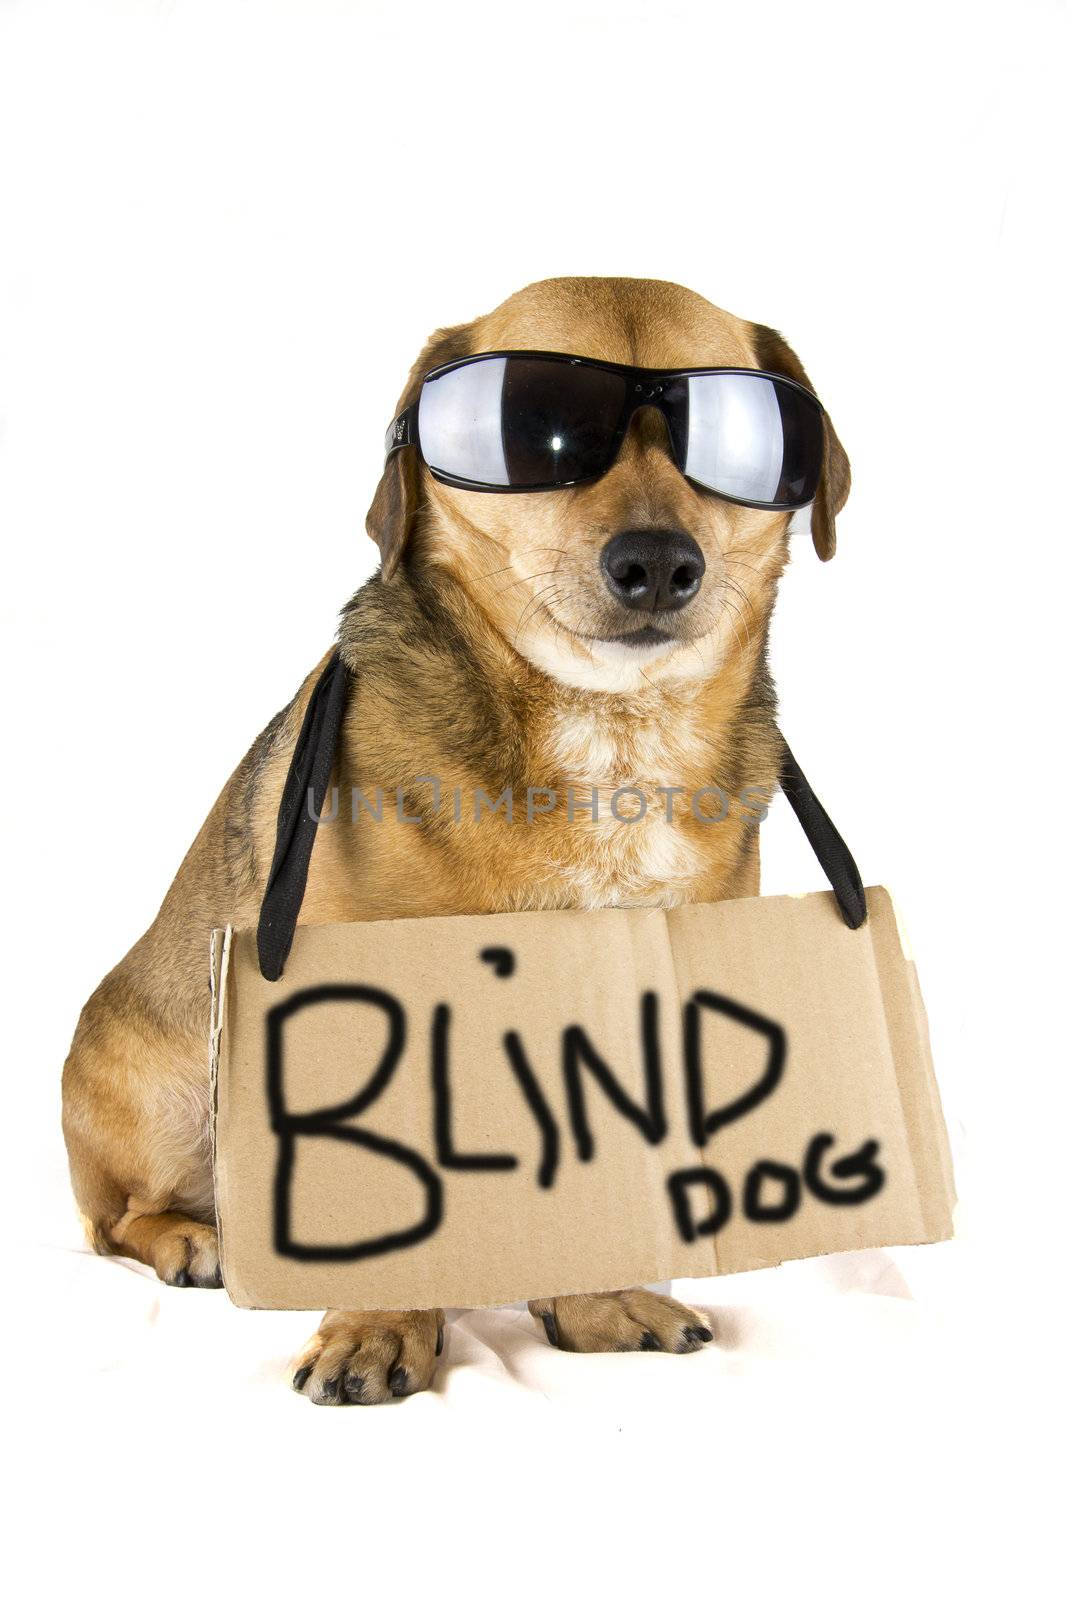 blind dog by danilobiancalana